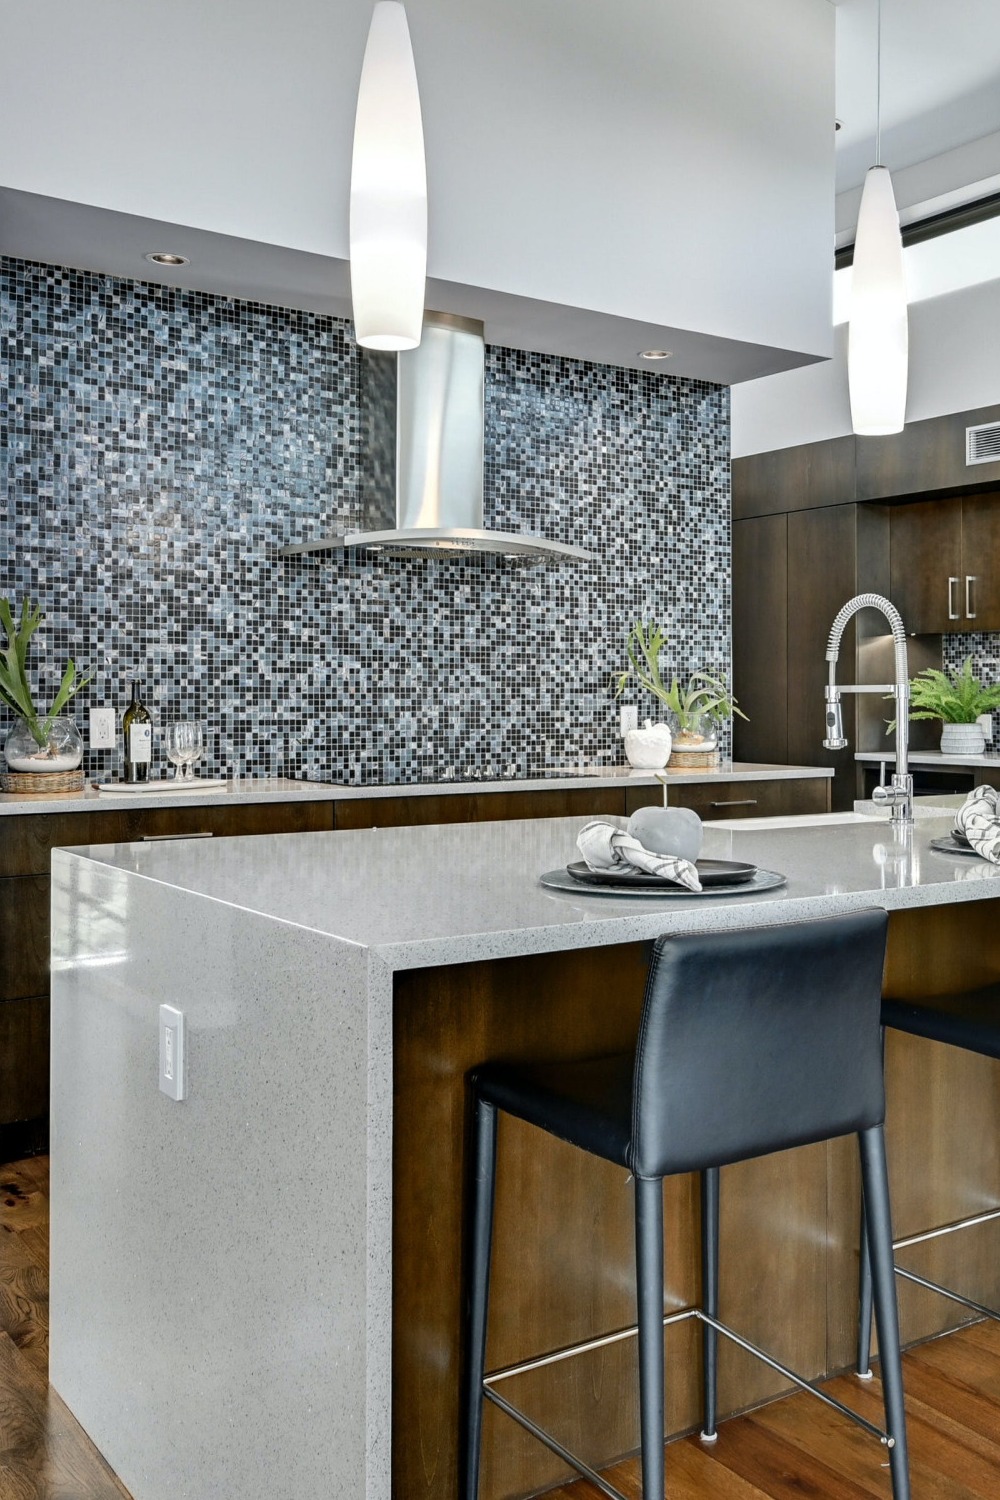 Green Kitchen Trends Eye Catching Kitchen Cabinets Designer Interior Design Next Year Waterfall Islands Tones